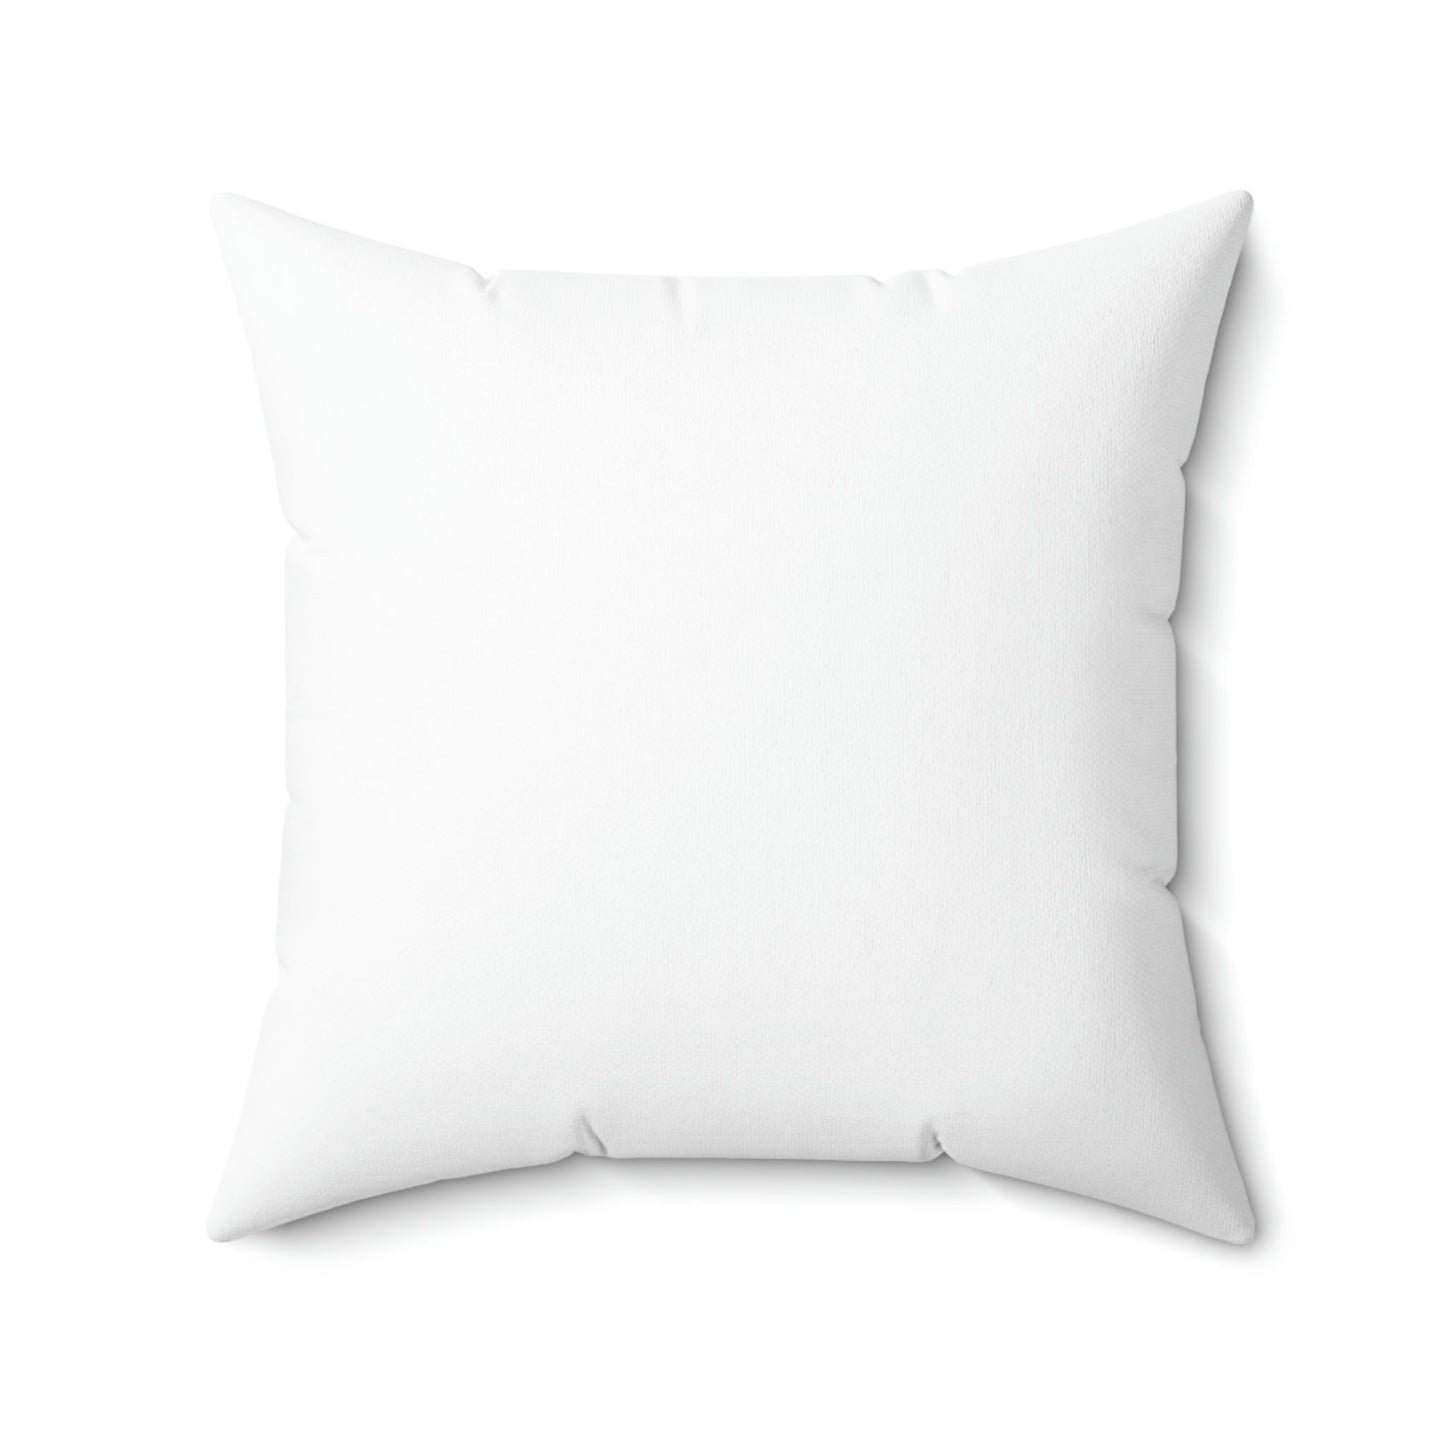 Spun Polyester Throw Pillows - "THE SAILS" Kelowna, BC